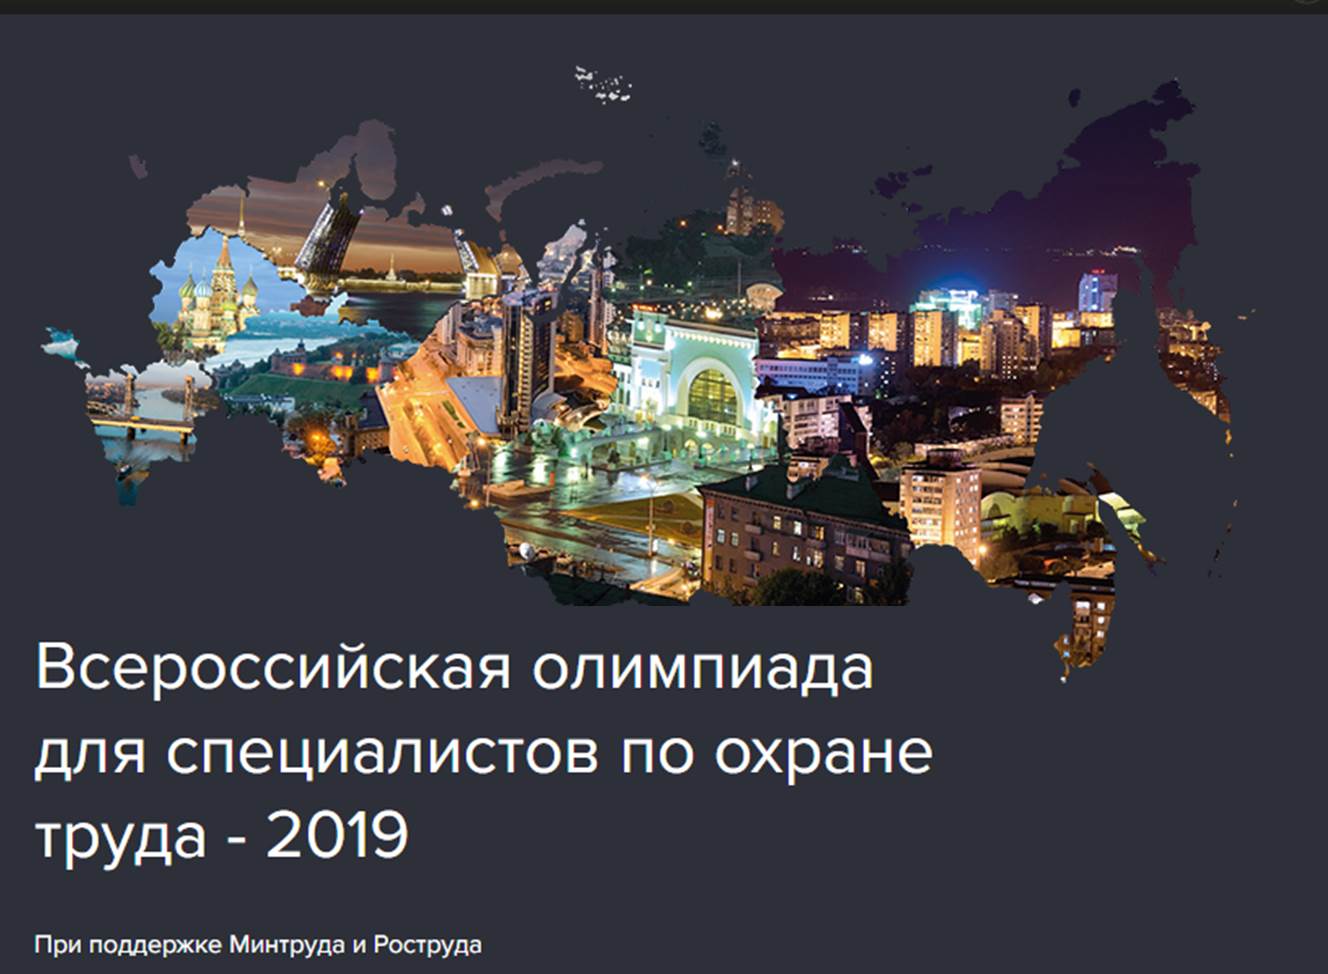 http://gov.cap.ru/Content2018/news/201812/17/Original/vserossijskaya_olimpiada.jpg